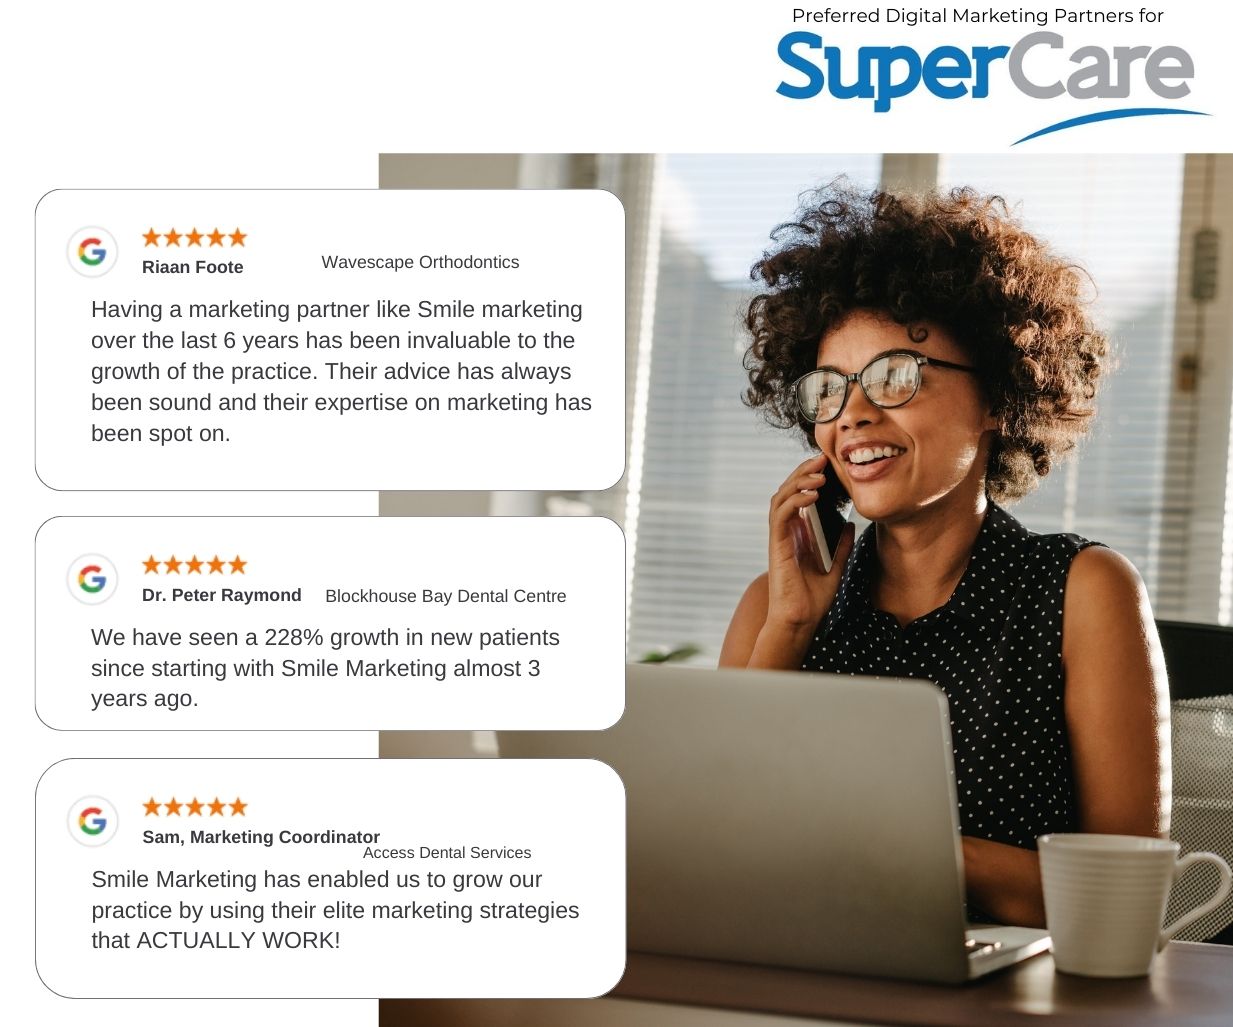 Supercare Preferred Website Vendor